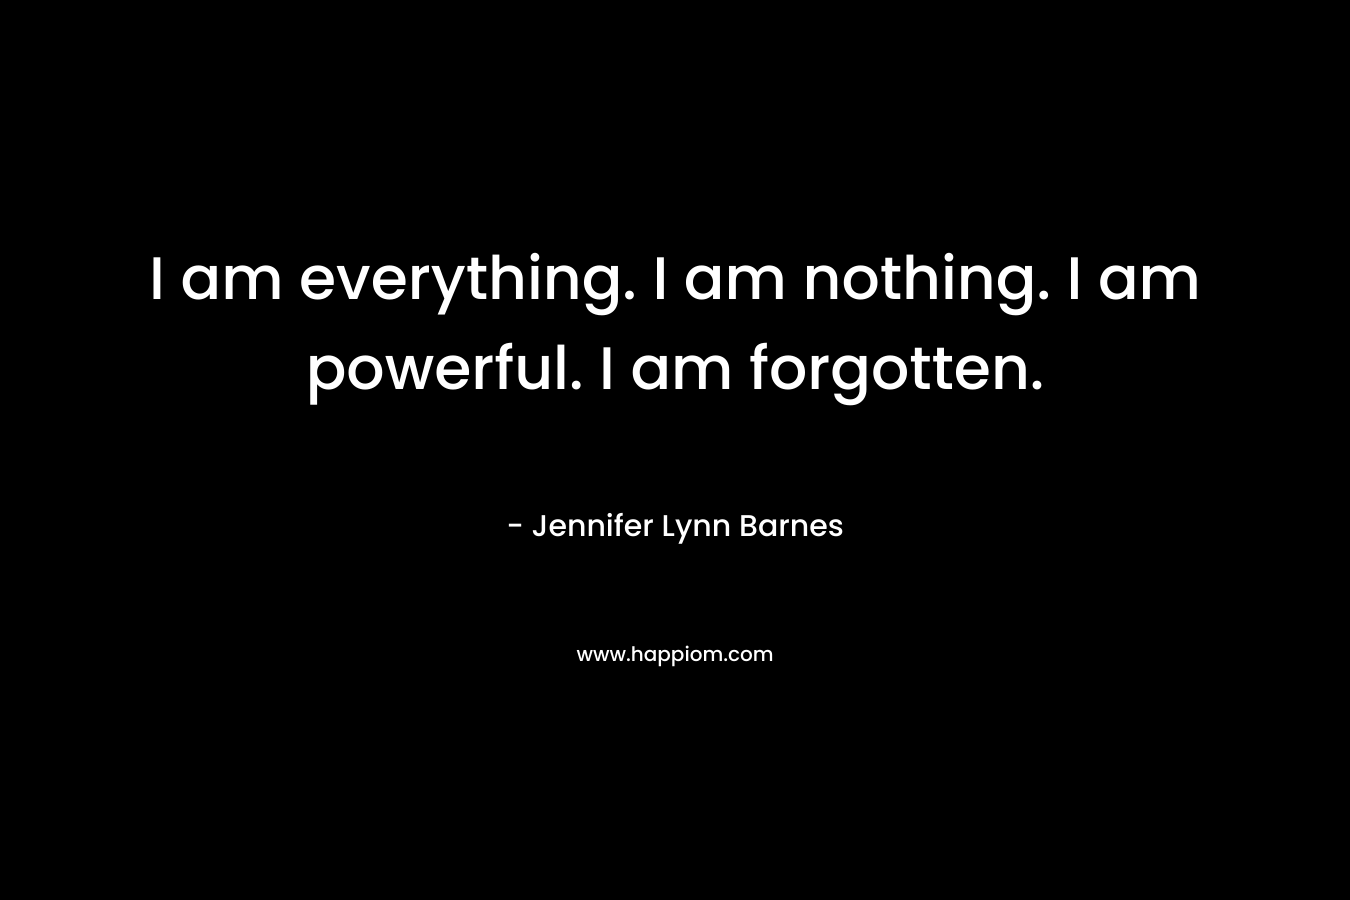 I am everything. I am nothing. I am powerful. I am forgotten.